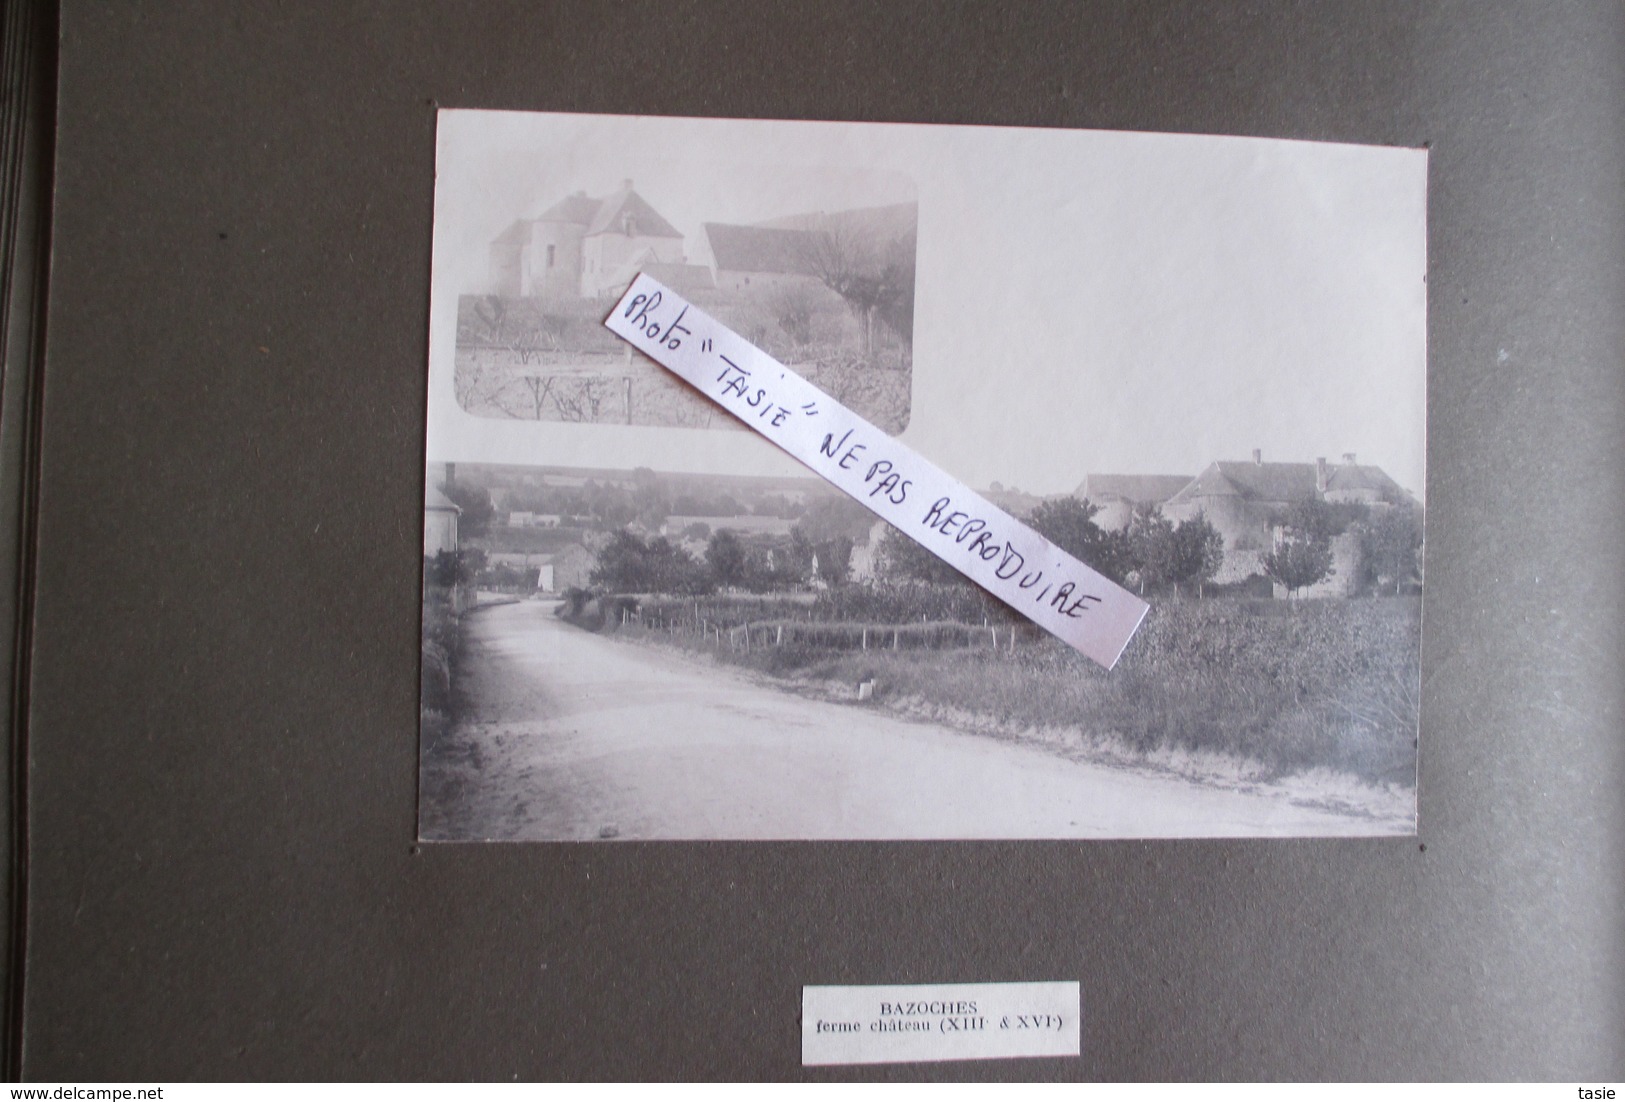 MARNE / AISNE exceptionnel album de 47 photos  FISMES et sa région ( BLANZY, COURVILLE, BAZOCHES...........) vers 1900